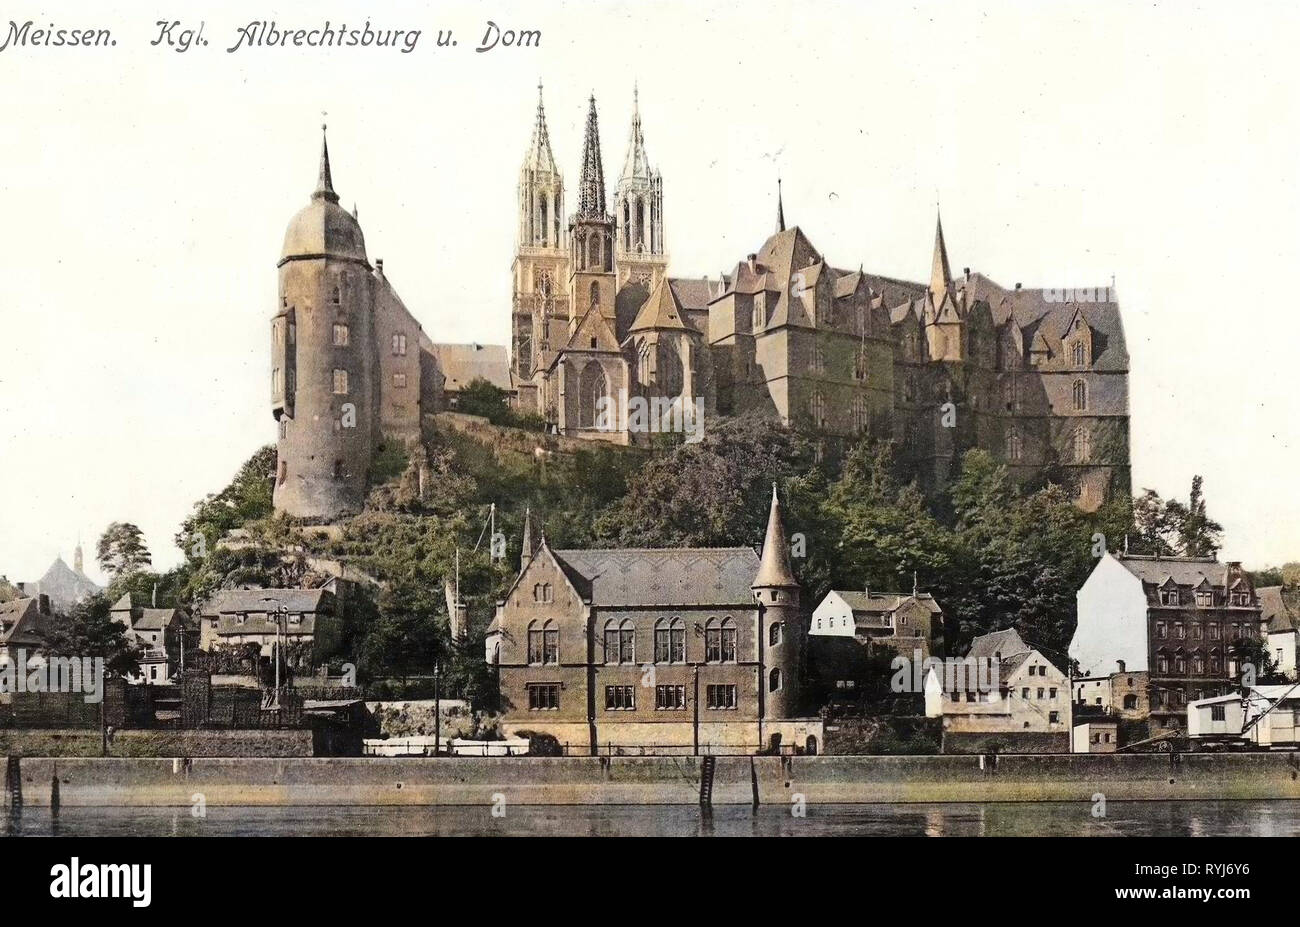 Albrechtsburg, Meissen Cathedral, 1908, Meißen, Albrechtsburg und Dom mit neuen Türmen, Germany Stock Photo